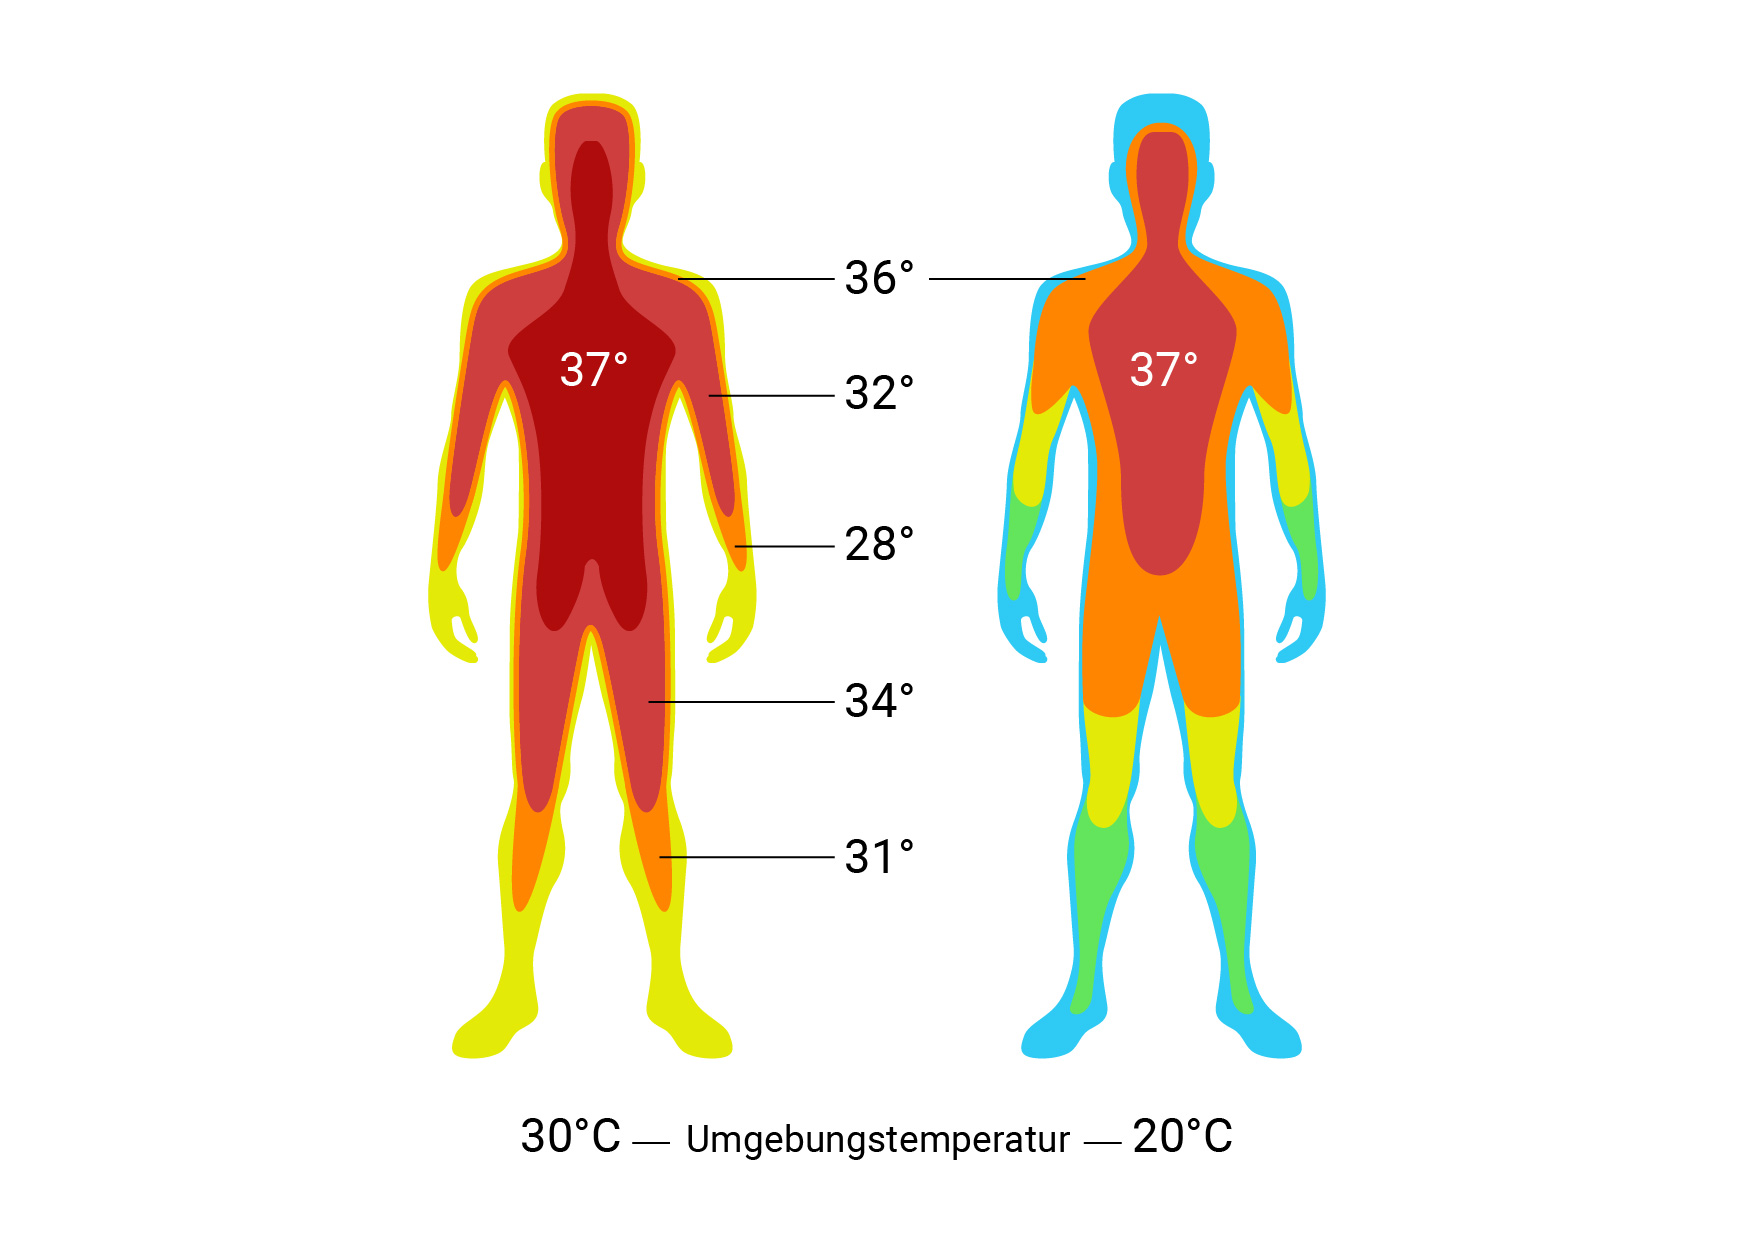 Естественная температура человека